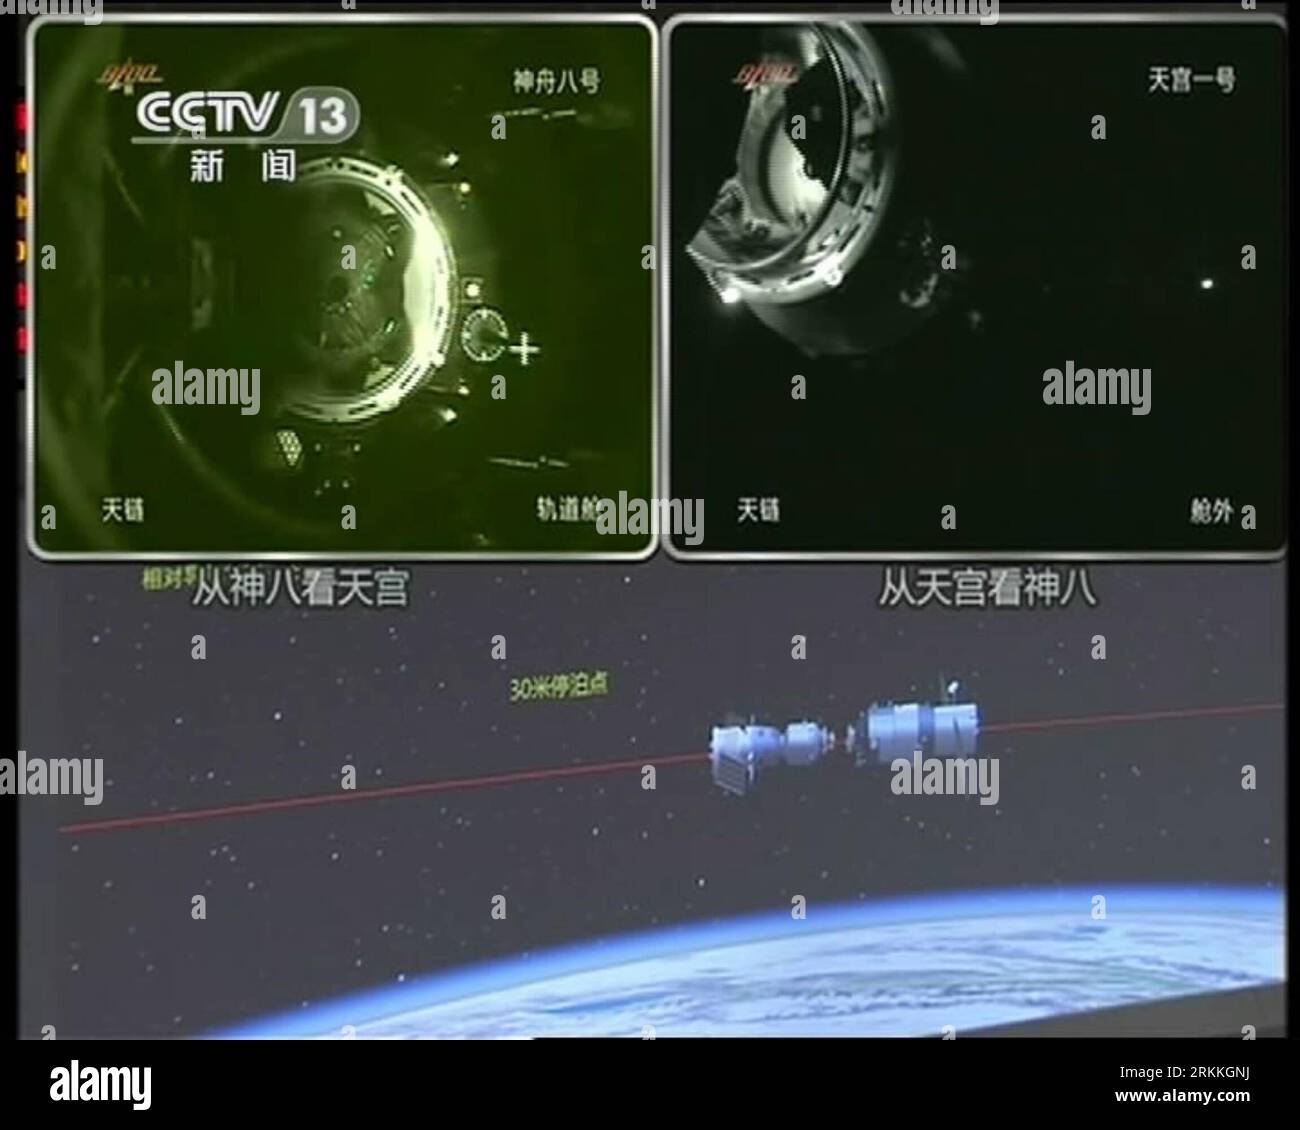 Bildnummer : 56241471 Datum : 02.11.2011 Copyright : imago/Xinhua (111103) -- PÉKIN, 3 novembre 2011 (Xinhua) -- Une capture vidéo prise à la télévision centrale de Chine le 3 novembre 2011 montre le vaisseau spatial Shenzhou-8 amarré avec le module de laboratoire spatial Tiangong-1. Vaisseau spatial sans pilote Shenzhou-8 amarré avec le module de laboratoire spatial Tiangong-1 tôt jeudi, selon le Centre de contrôle aérospatial de Beijing. (Xinhua) (ljh) (TIANGONG-1&SHENZHOU-8 DOCKING)CHINA-TIANGONG-1 -SHENZHOU-8 -DOCKING (CN) PUBLICATIONxNOTxINxCHN Gesellschaft Raumfahrt Andocken Andockmanöver x0x xst 2011 quadrat 56241471 Date 02 11 2 Banque D'Images